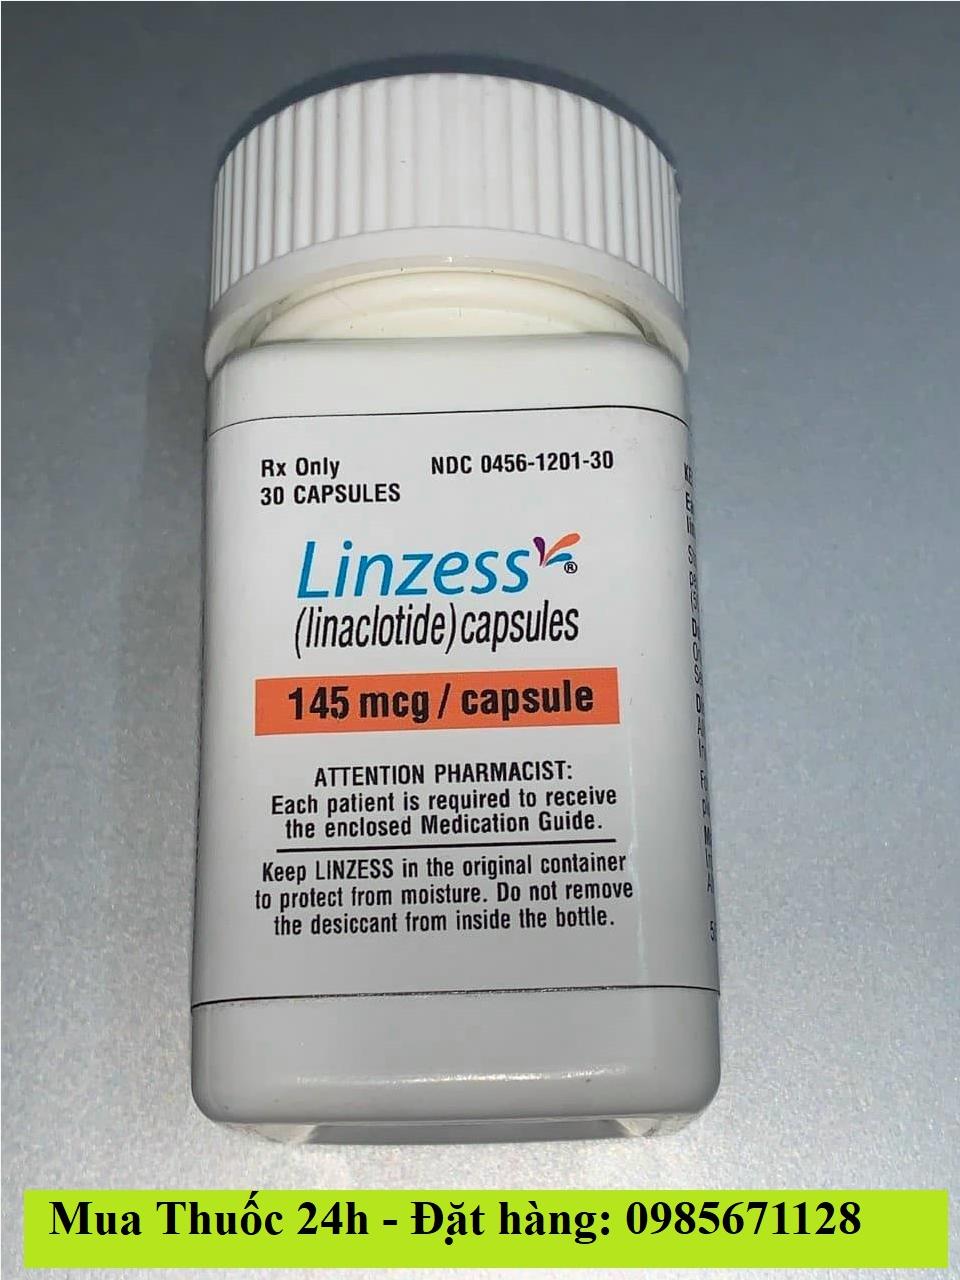 Thuốc Linzess 145mcg Linaclotide giá bao nhiêu mua ở đâu